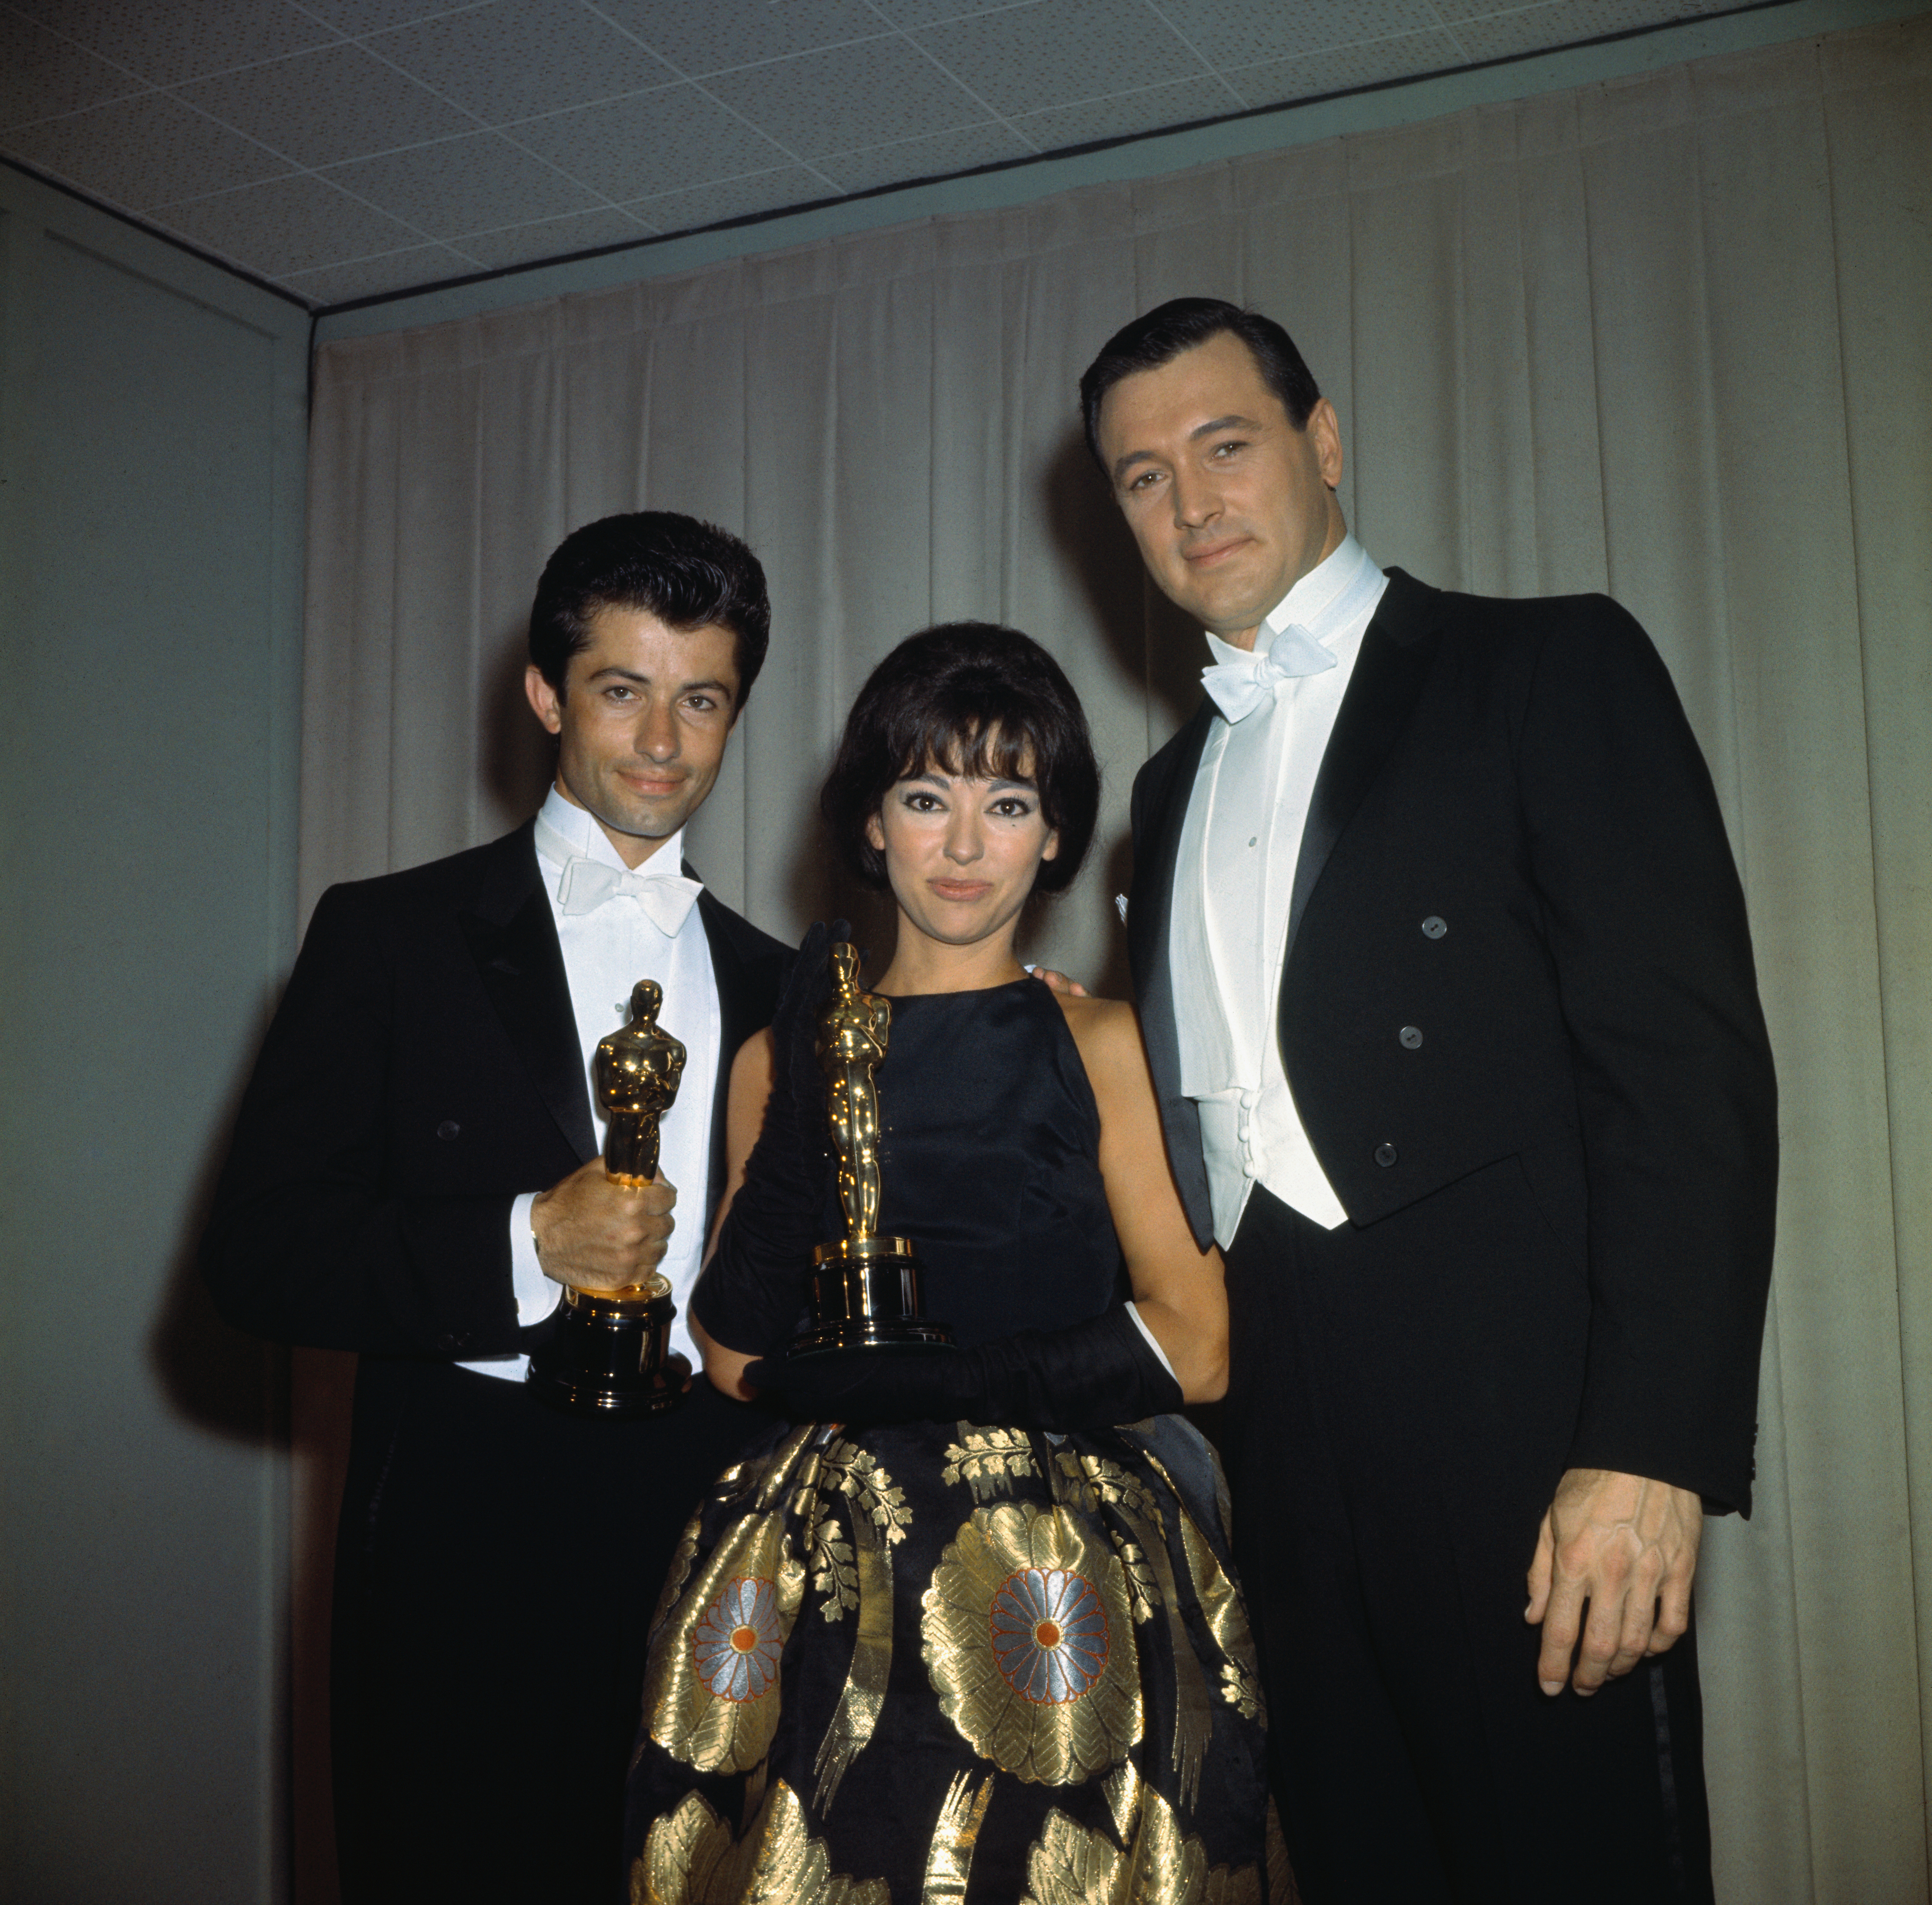 Rita Moreno with two men, holding their Oscars